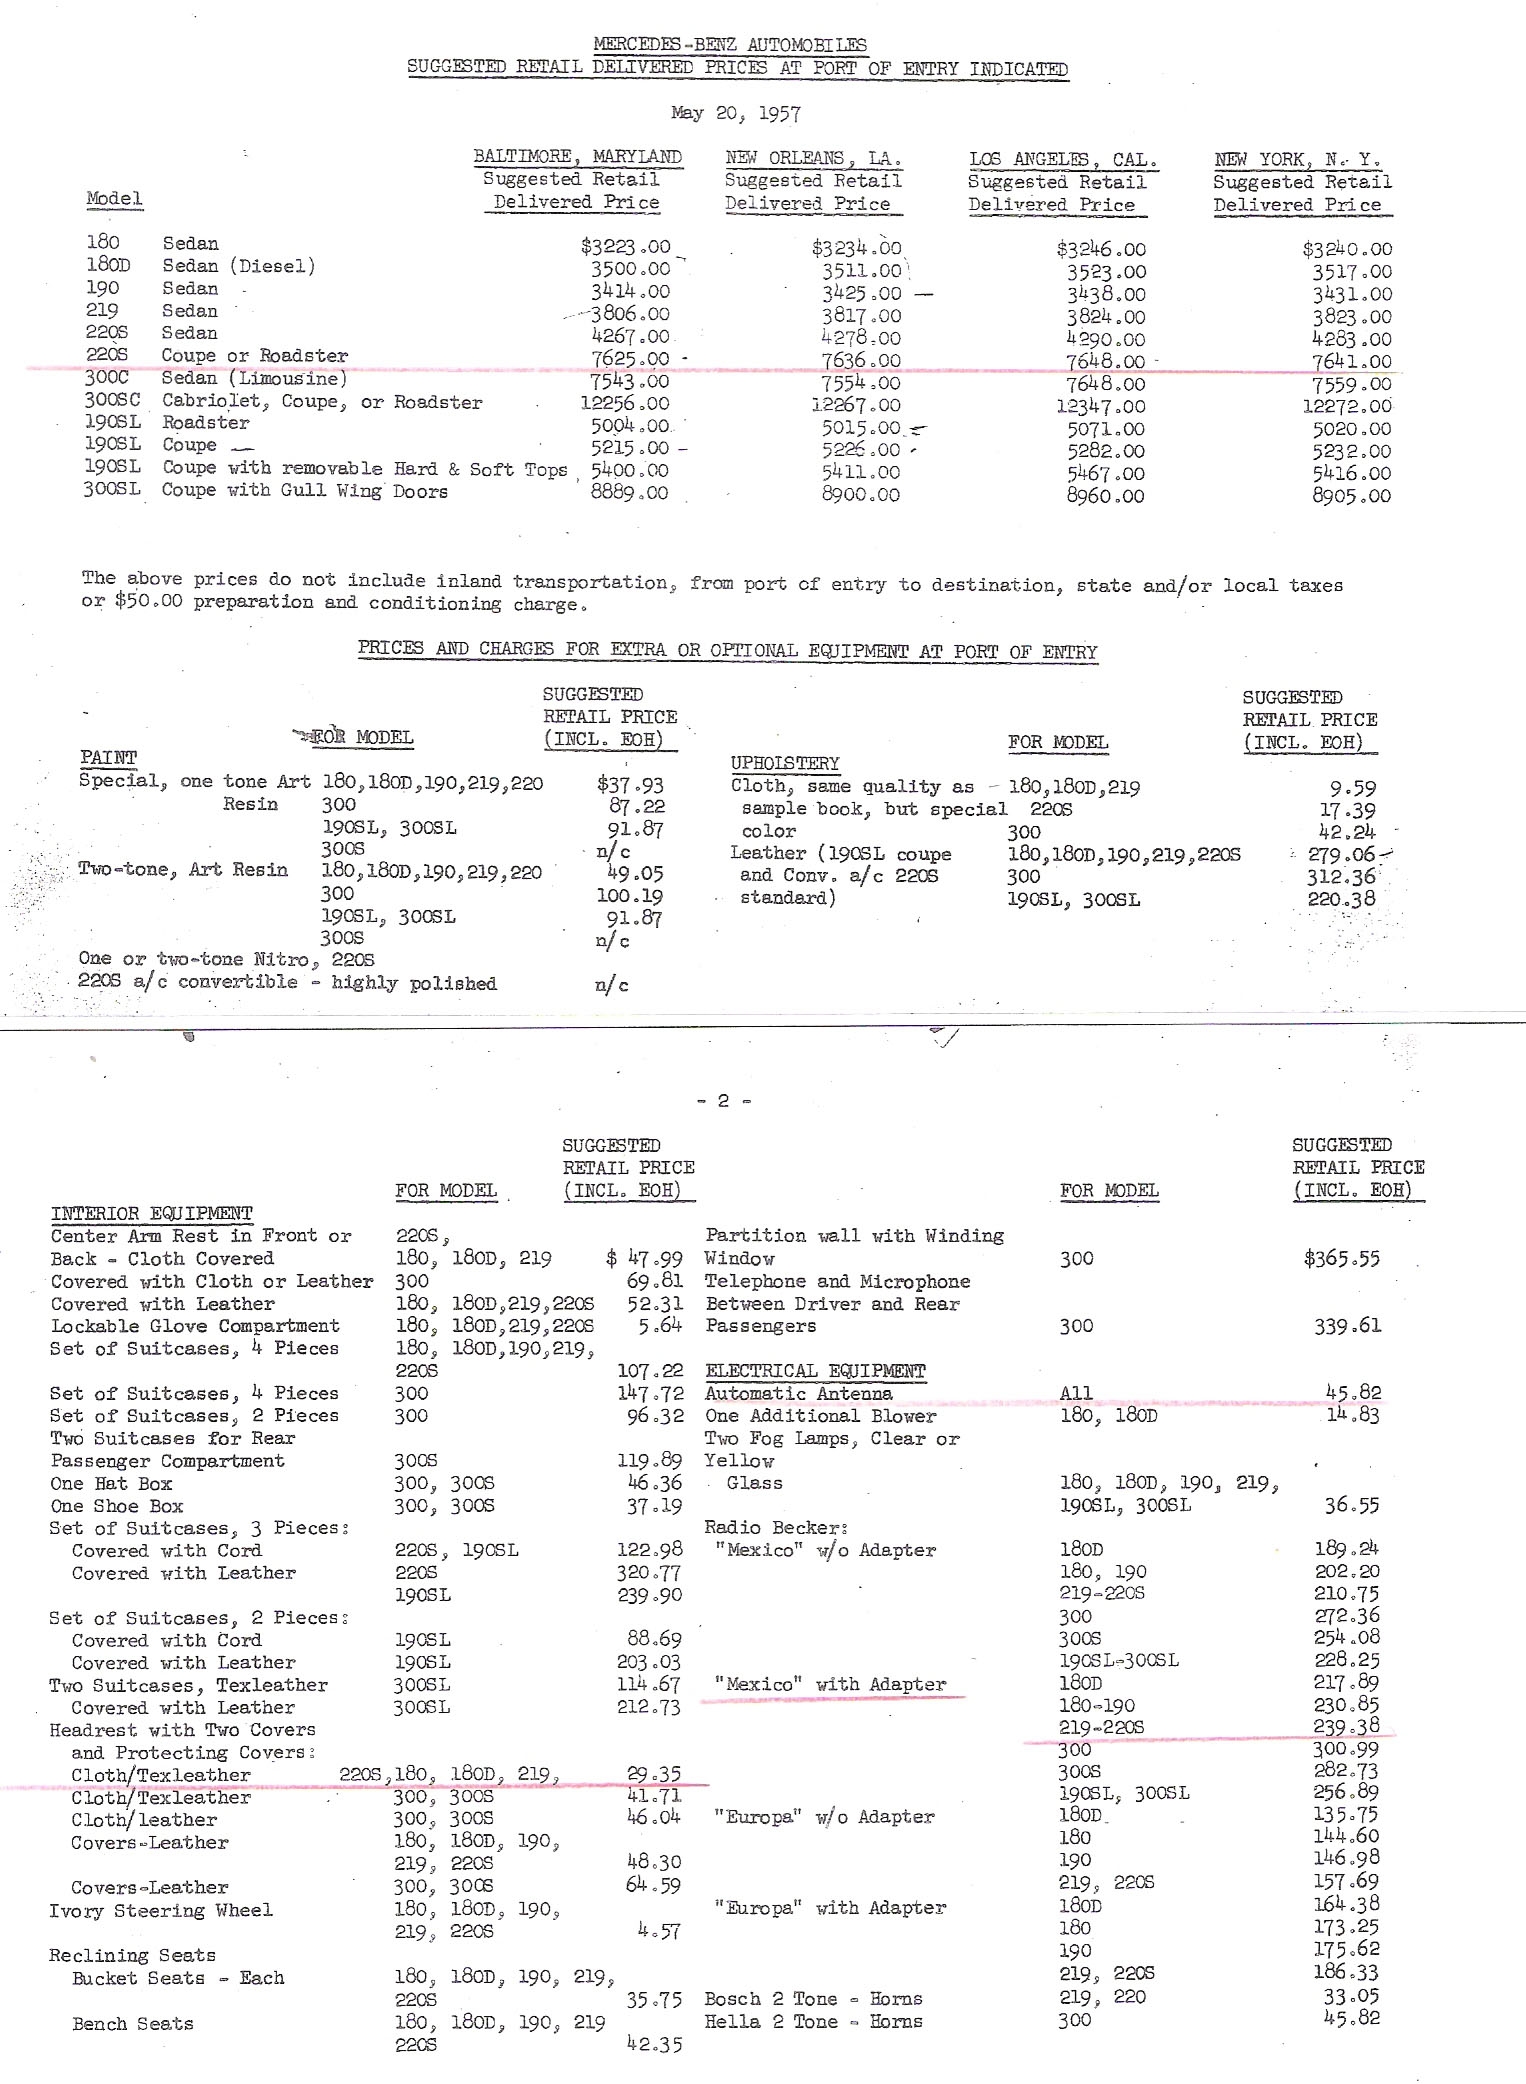 mercedes invoice price original mercedes benz ponton prices wwwmbzponton 1526 X 2084